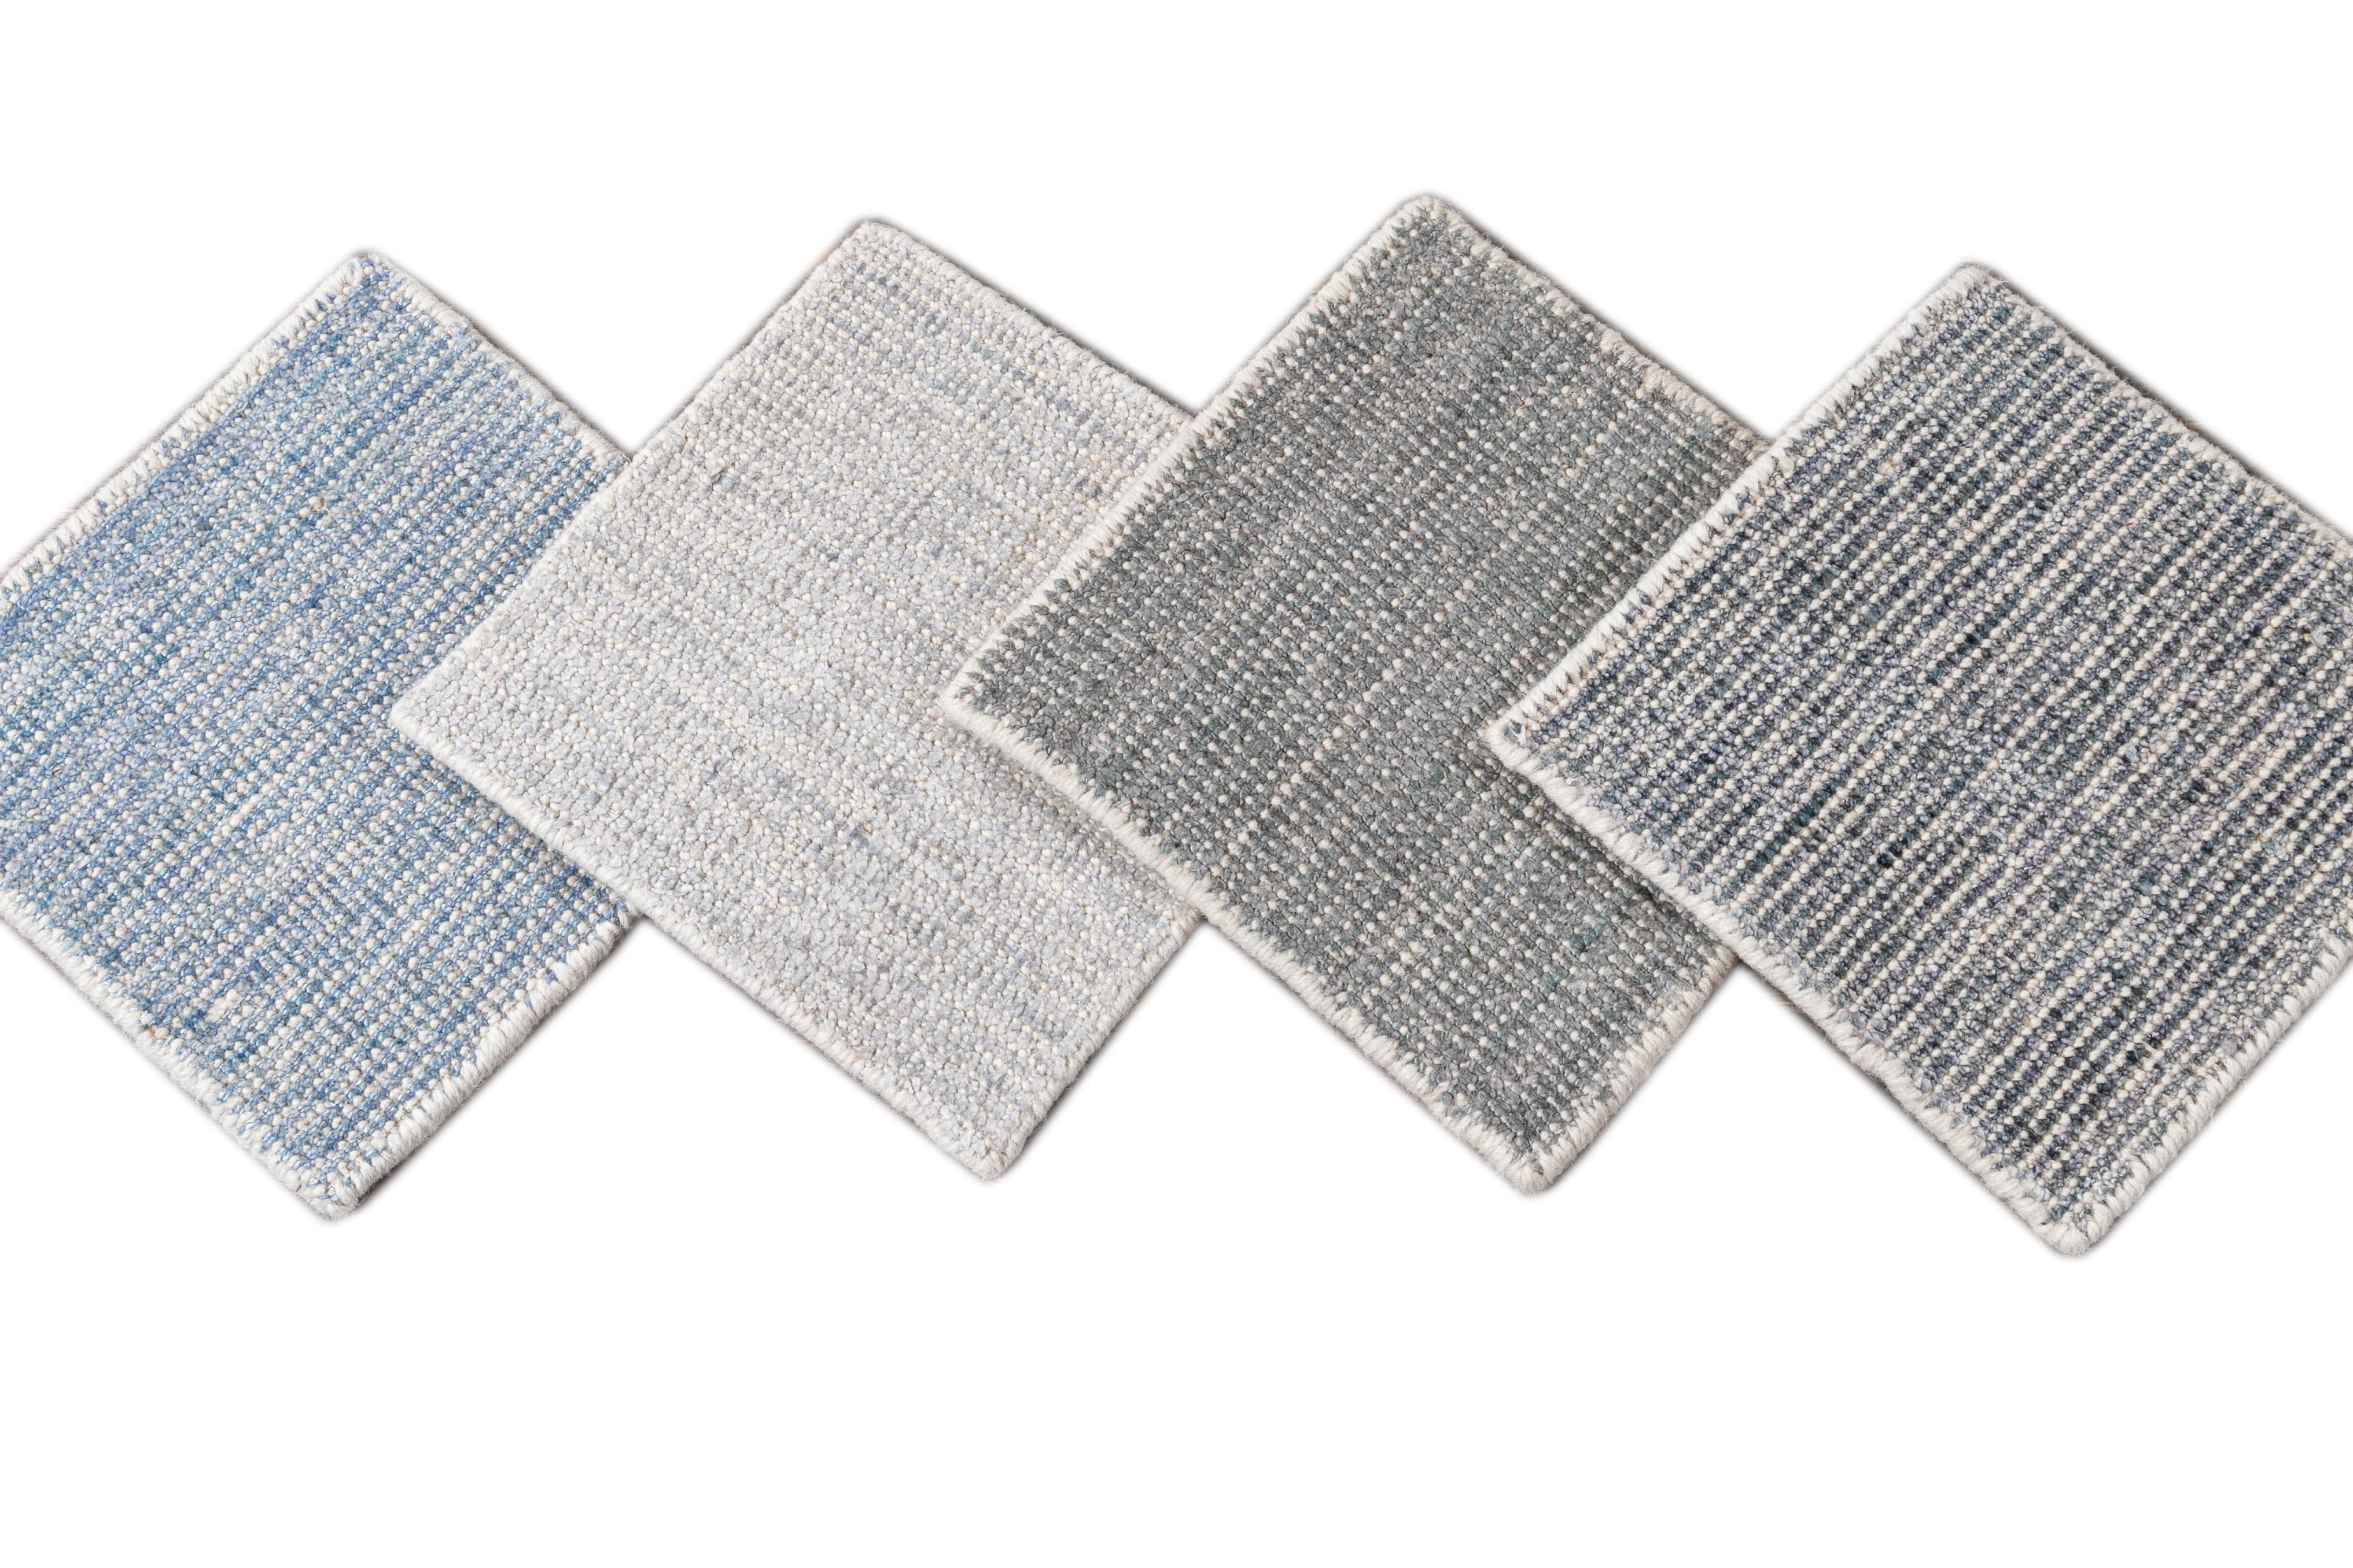 Boho-Teppich nach Maß. Kundenspezifische Größen und Farben auf Bestellung.

Material: Wolle/Bambusseide
Vorlaufzeit: Ungefähr 12 Wochen
Verfügbare Farben: über 100 Farbtöne.